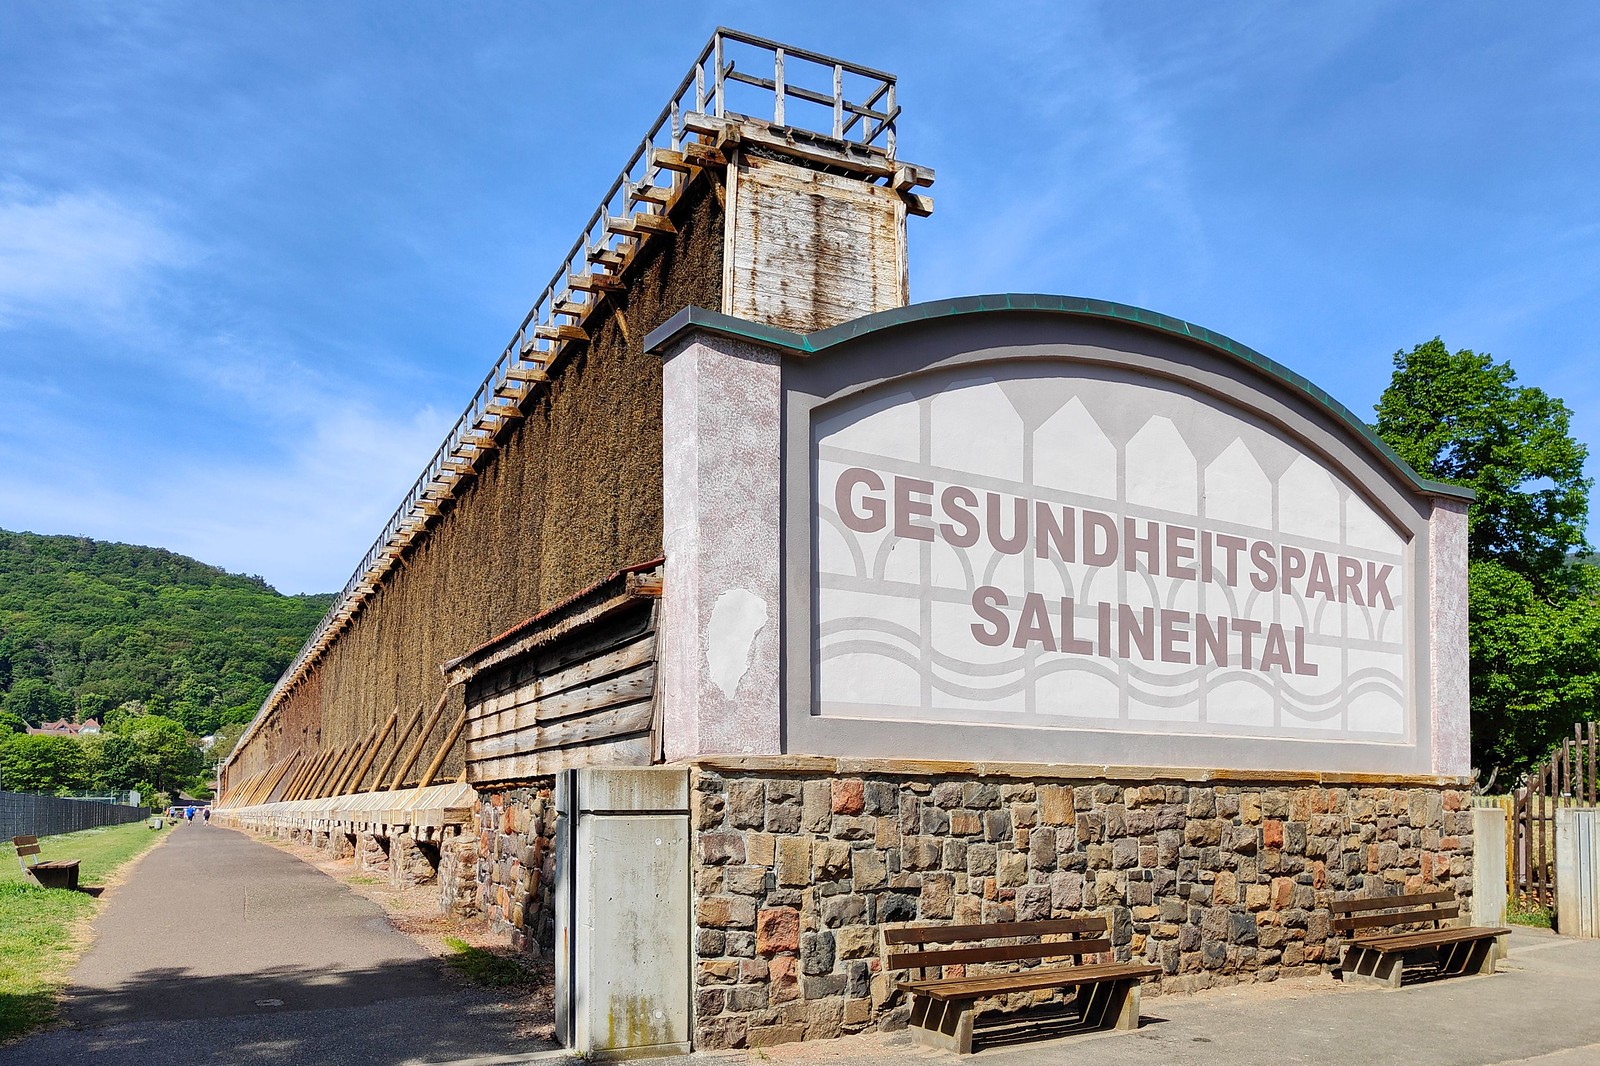 Gradierwerke im Salinental bei Bad Kreuznach